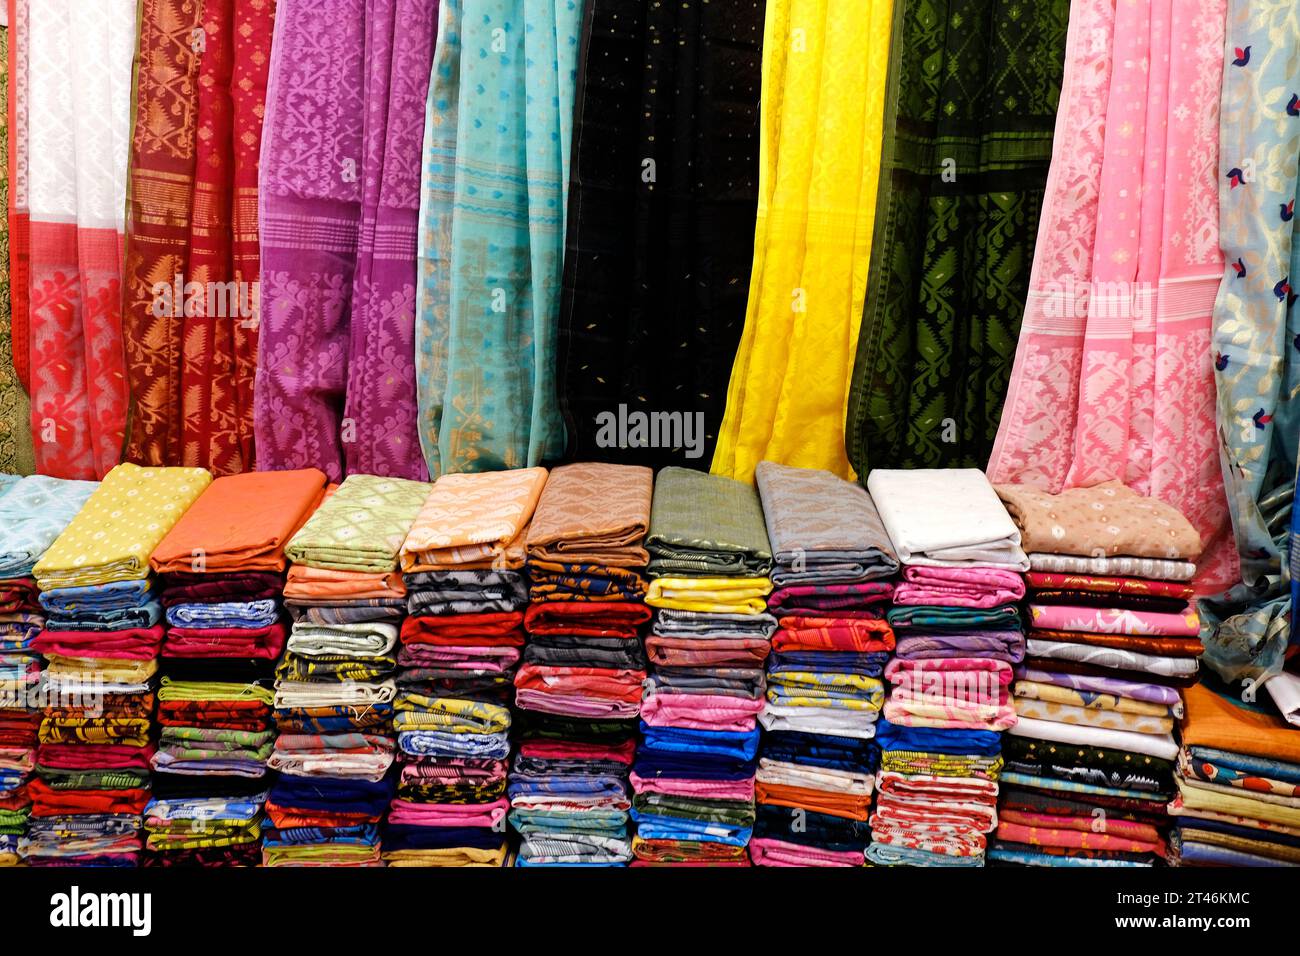 Traditionelles indisches Kleid / Saree, verschiedene Texturen und Farben schöne Textilien, bunter indischer Stoff, Stoff aus Indien. Stockfoto